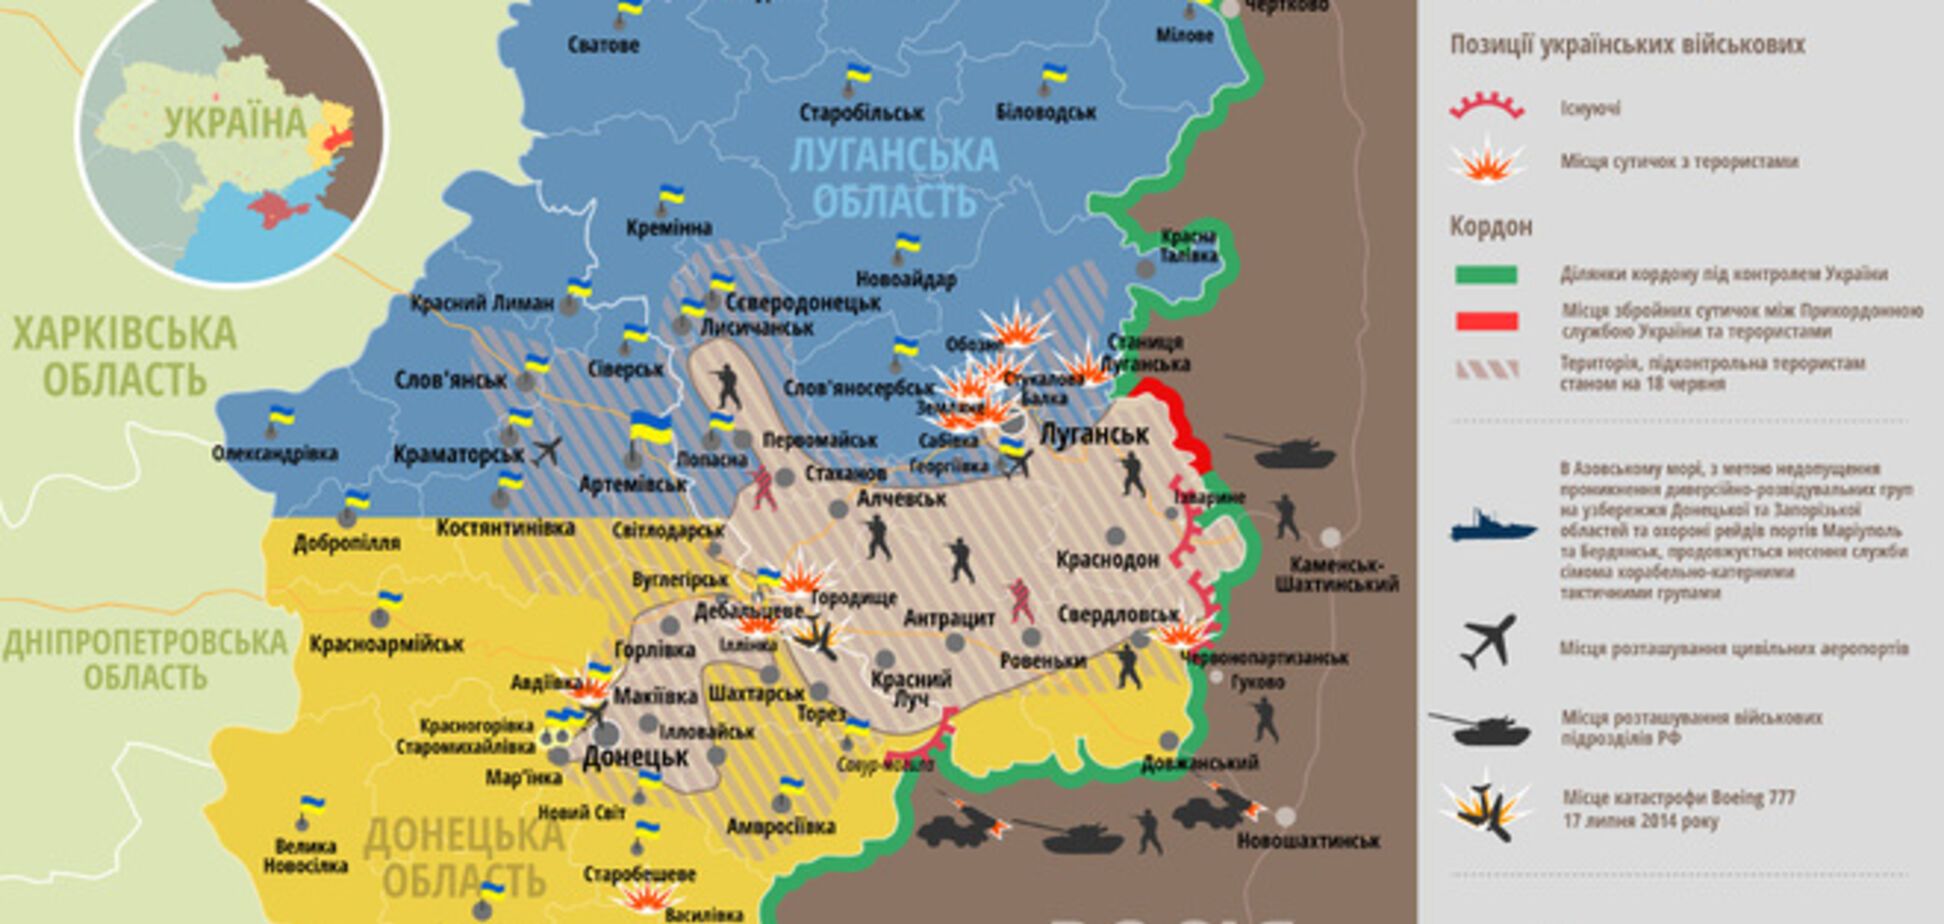 Опубликована актуальная карта сражений на территории АТО